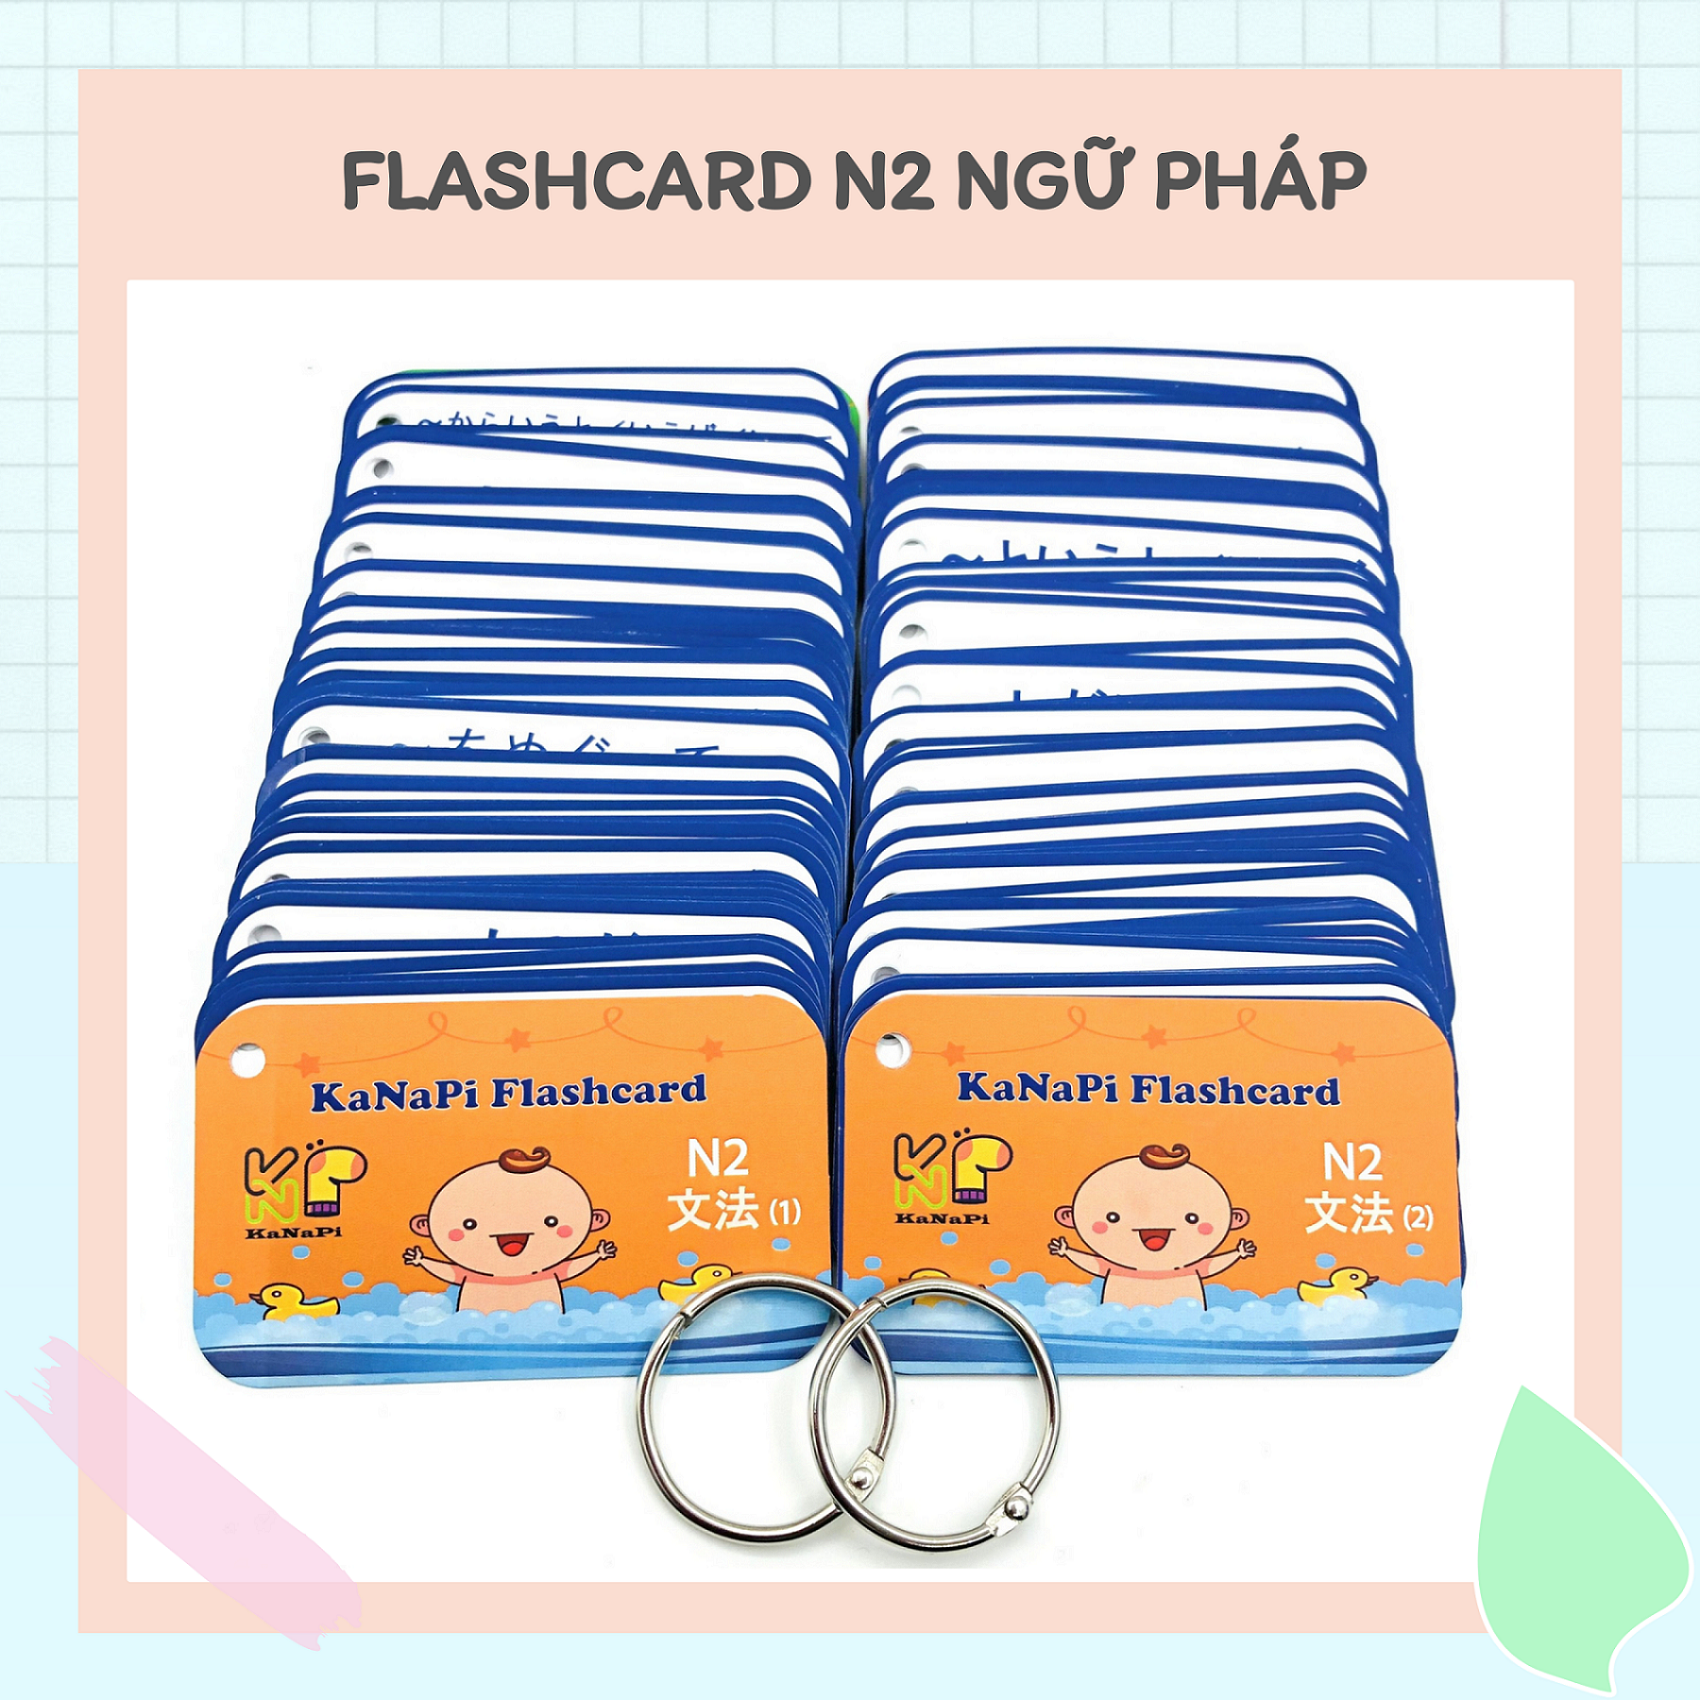 Trọn Bộ Flashcards N2 Ngữ Pháp (Thẻ Flashcard + Bộ Sổ tay ngữ pháp N2 + Sổ tay động từ + Học Online) – Kanapi Flashcard